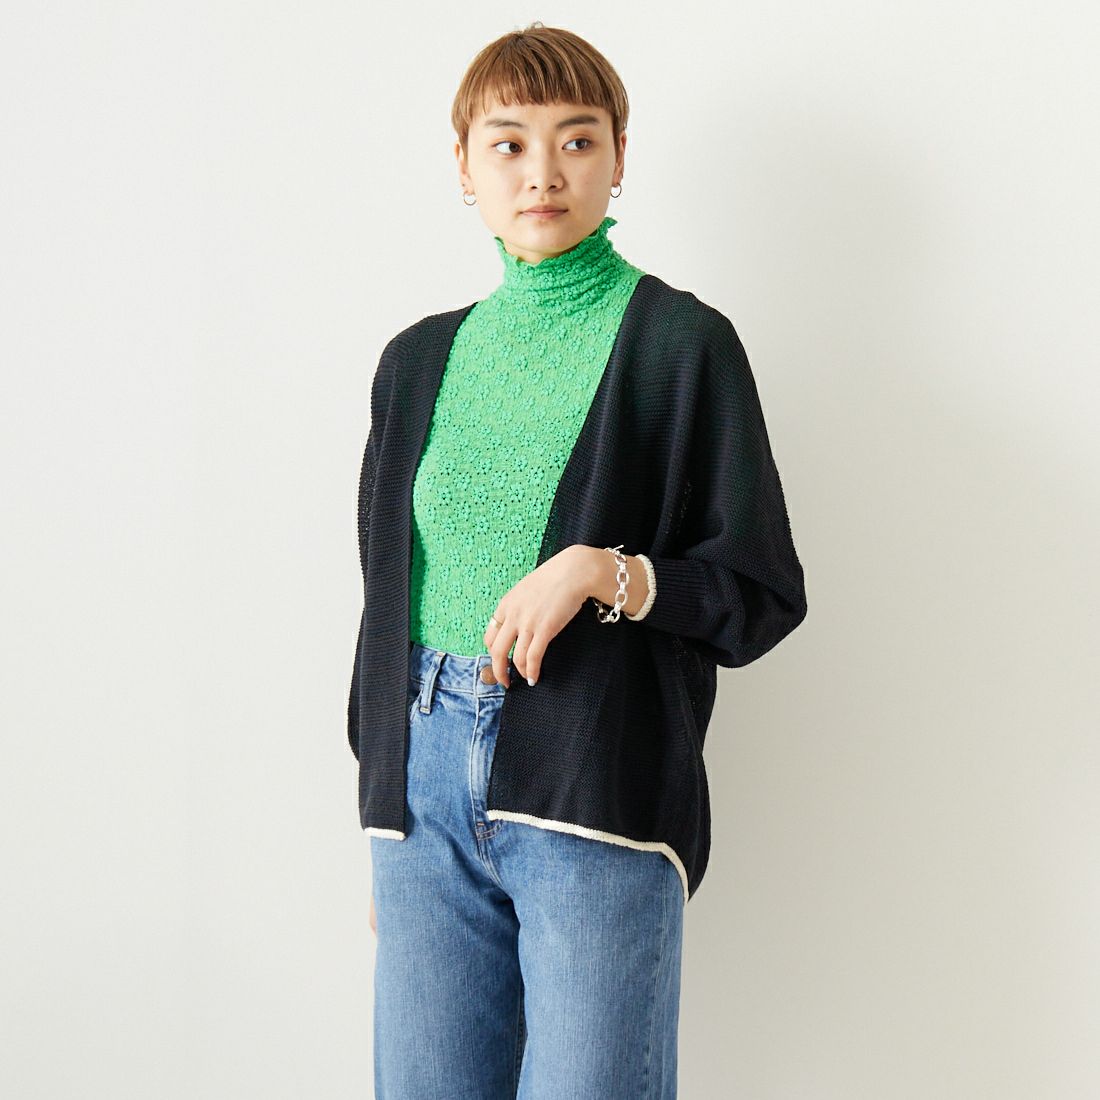 Jeans Factory Clothes [ジーンズファクトリークローズ] ホールガーメント配色カーディガン [113-1987]